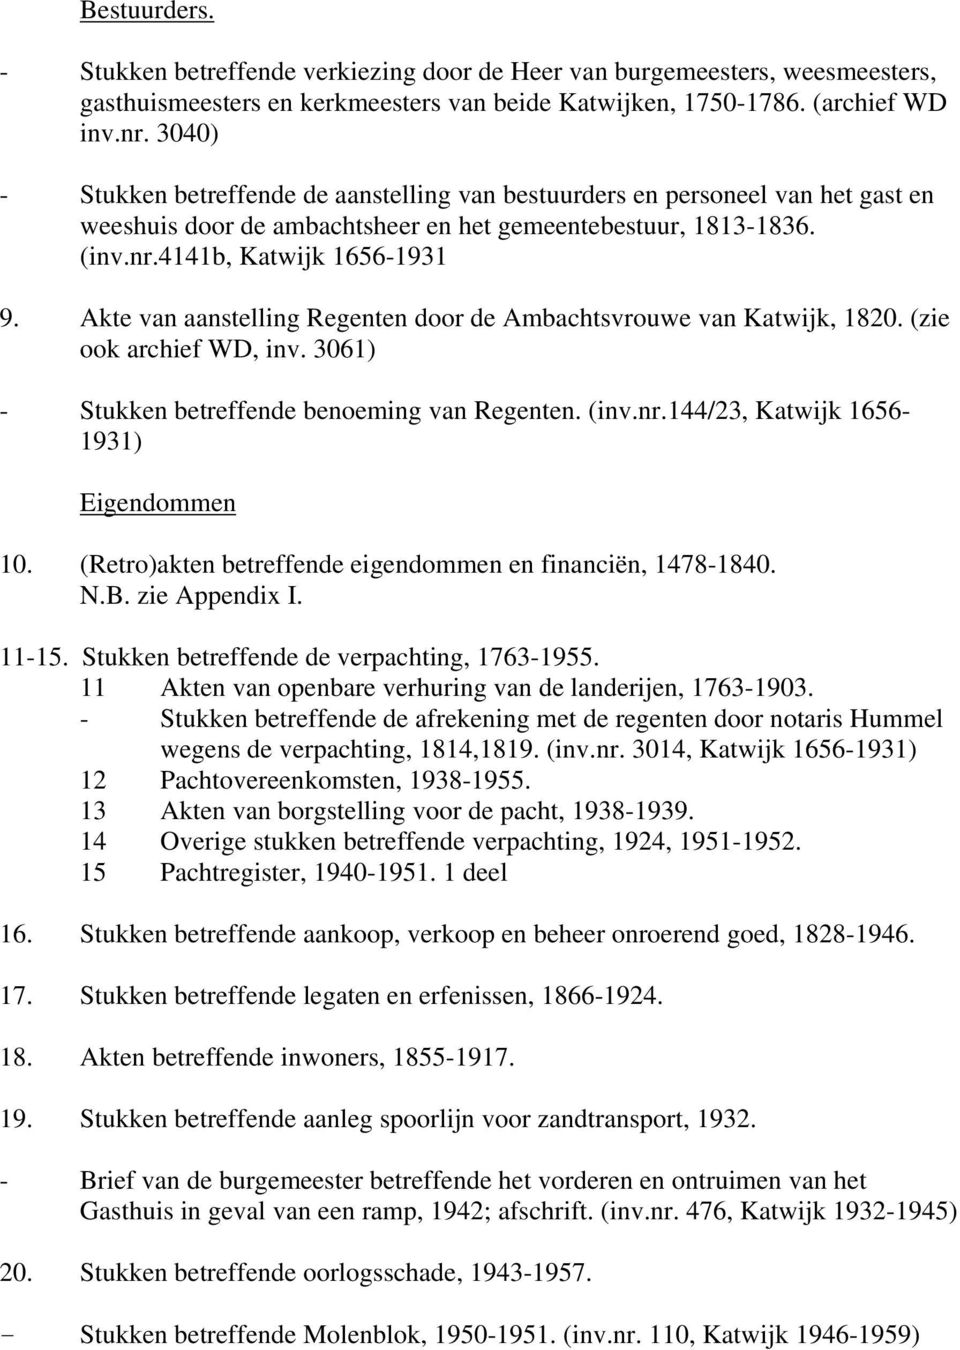 Akte van aanstelling Regenten door de Ambachtsvrouwe van Katwijk, 1820. (zie ook archief WD, inv. 3061) - Stukken betreffende benoeming van Regenten. (inv.nr.144/23, Katwijk 1656-1931) Eigendommen 10.